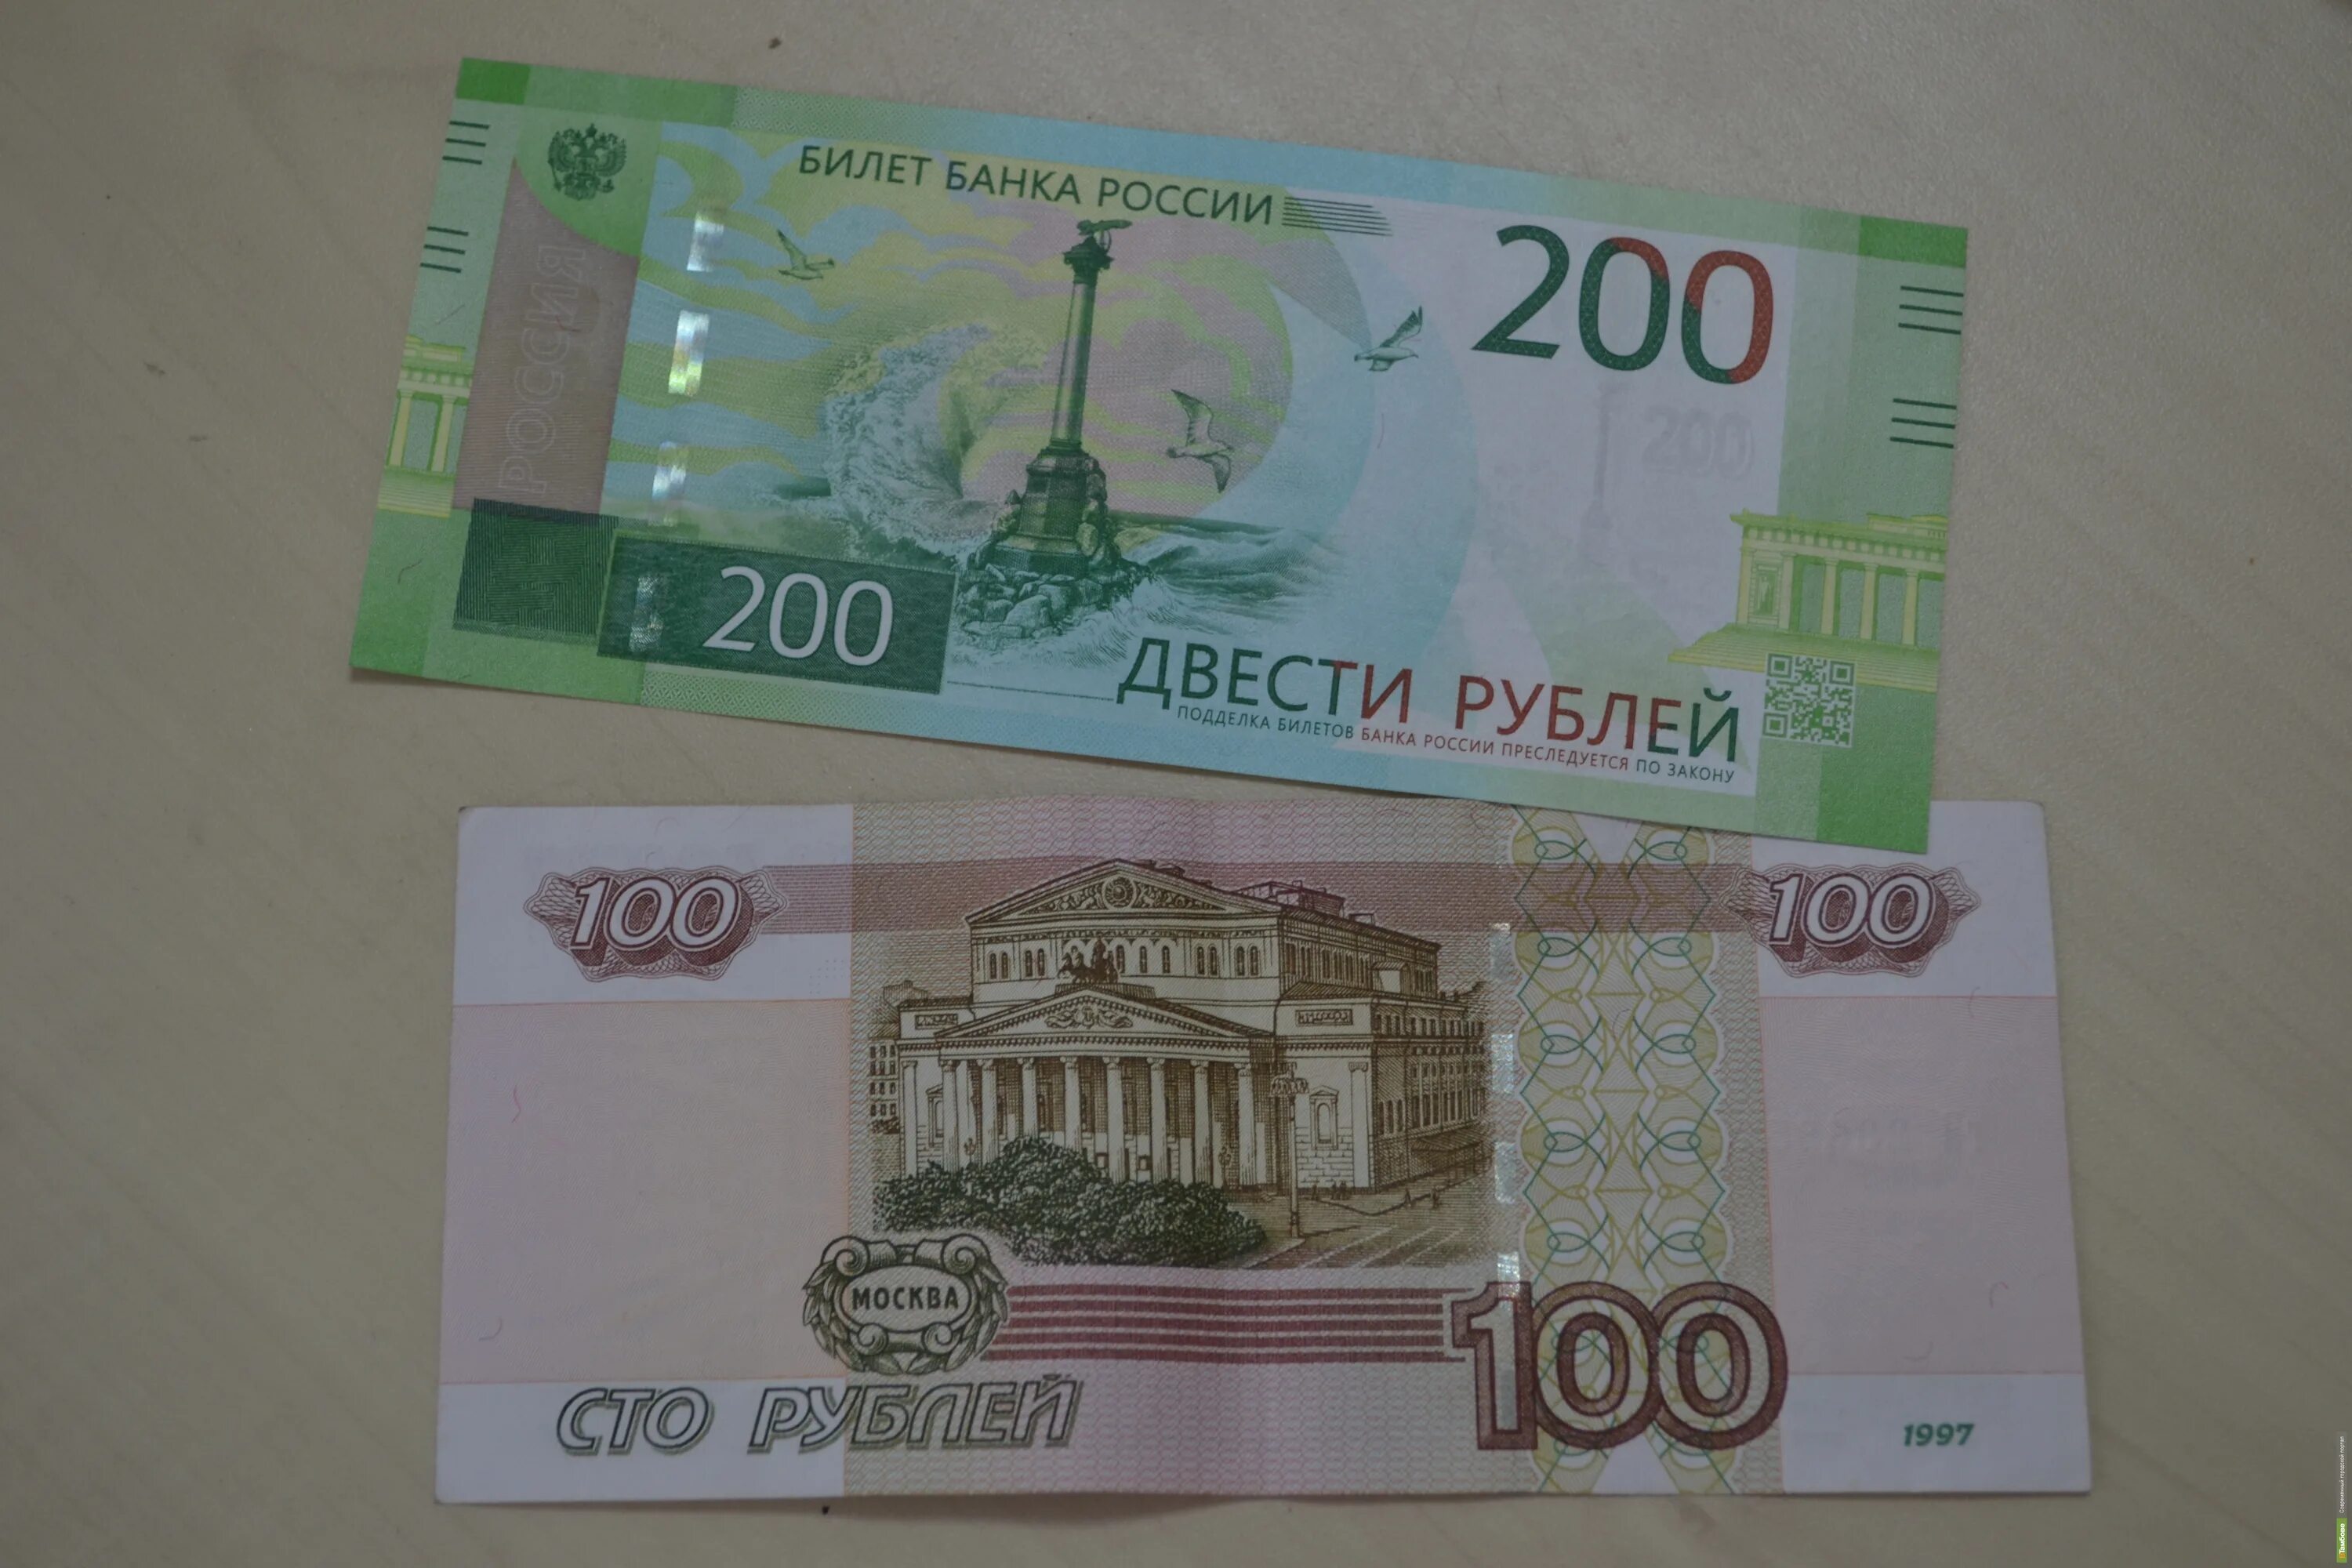 200 Рублей. 200 Рублей банкнота. 200 Рублей 1997. Новые купюры. 20 от 200 рублей